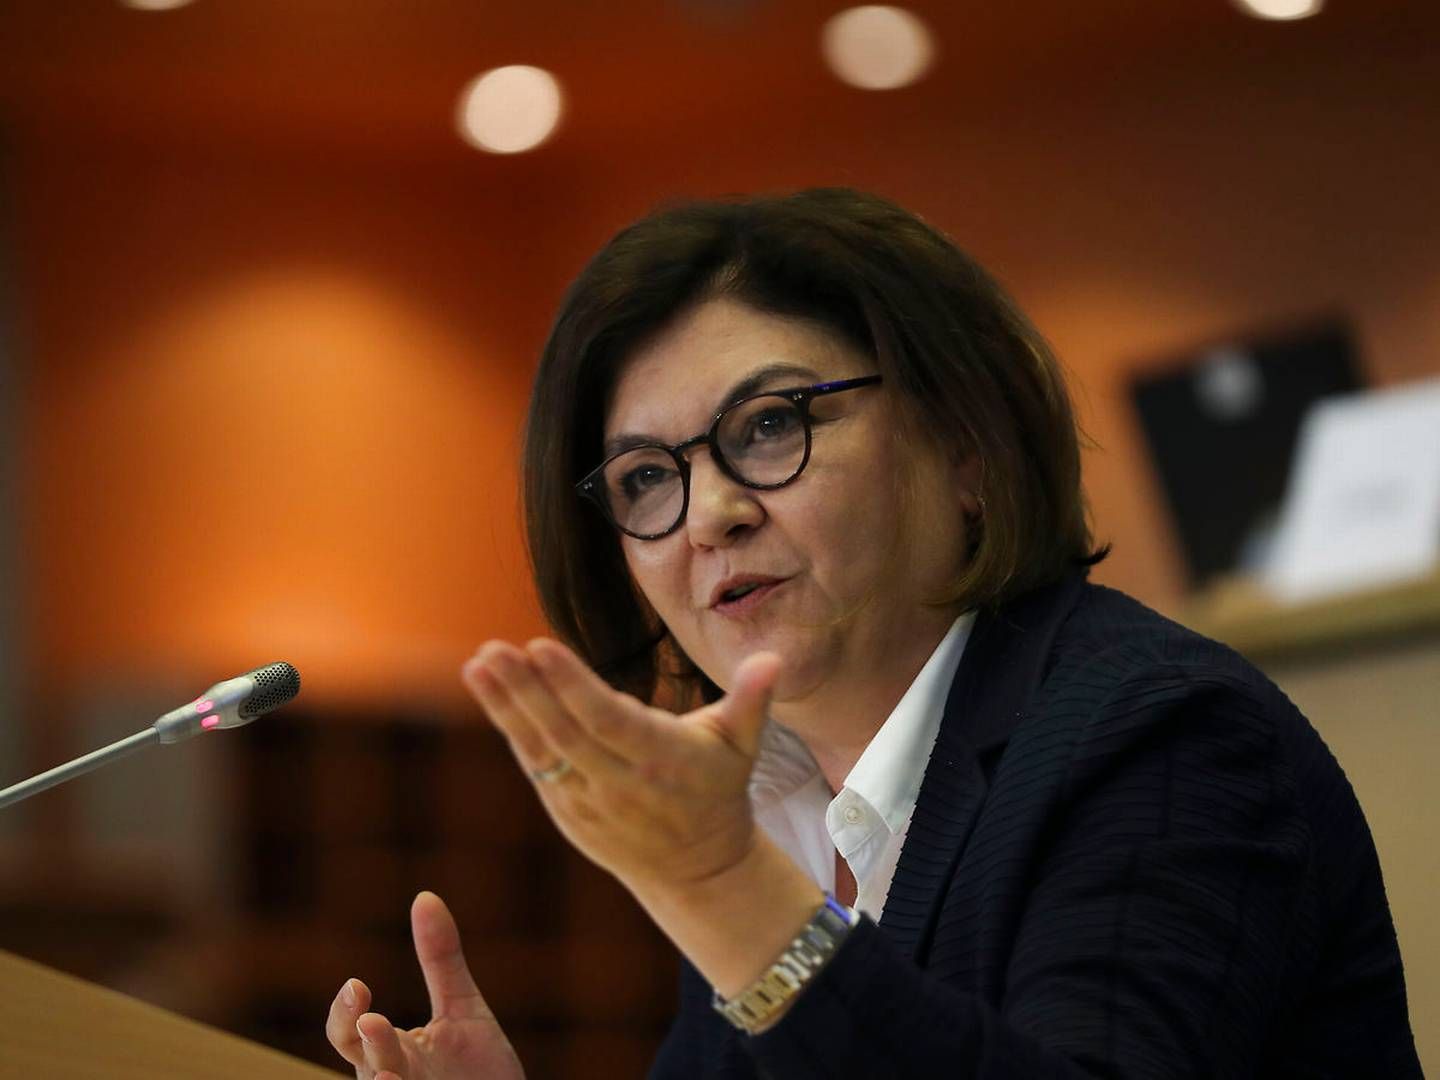 Adina Vălean, EU-kommissær for transport. | Foto: Francisco Seco/AP/Ritzau Scanpix